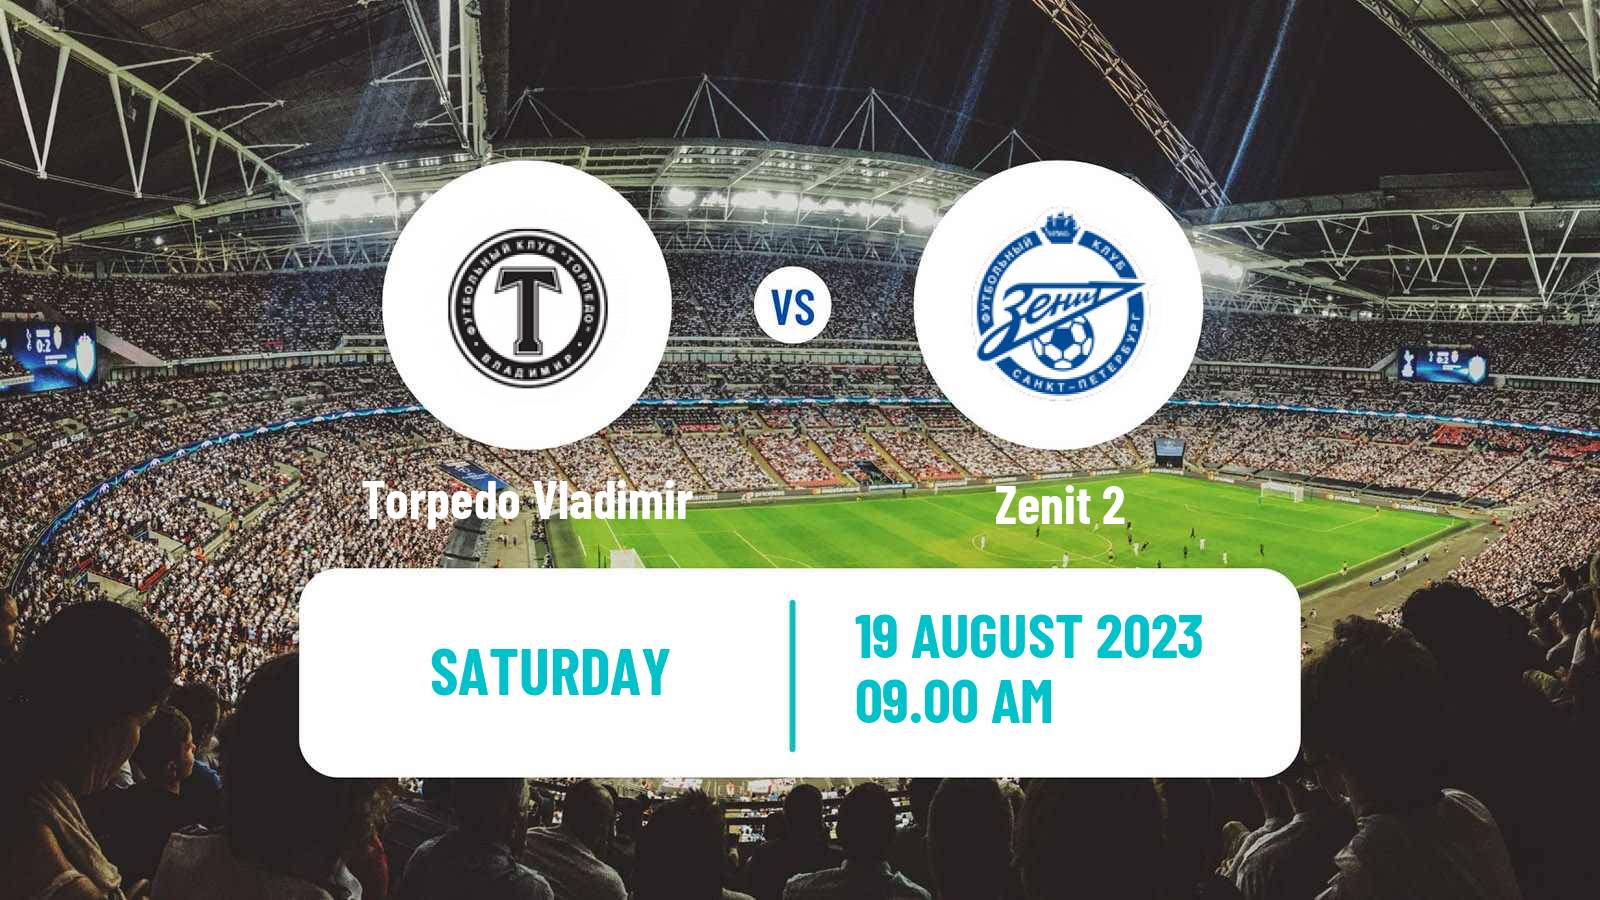 Soccer FNL 2 Division B Group 2 Torpedo Vladimir - Zenit 2